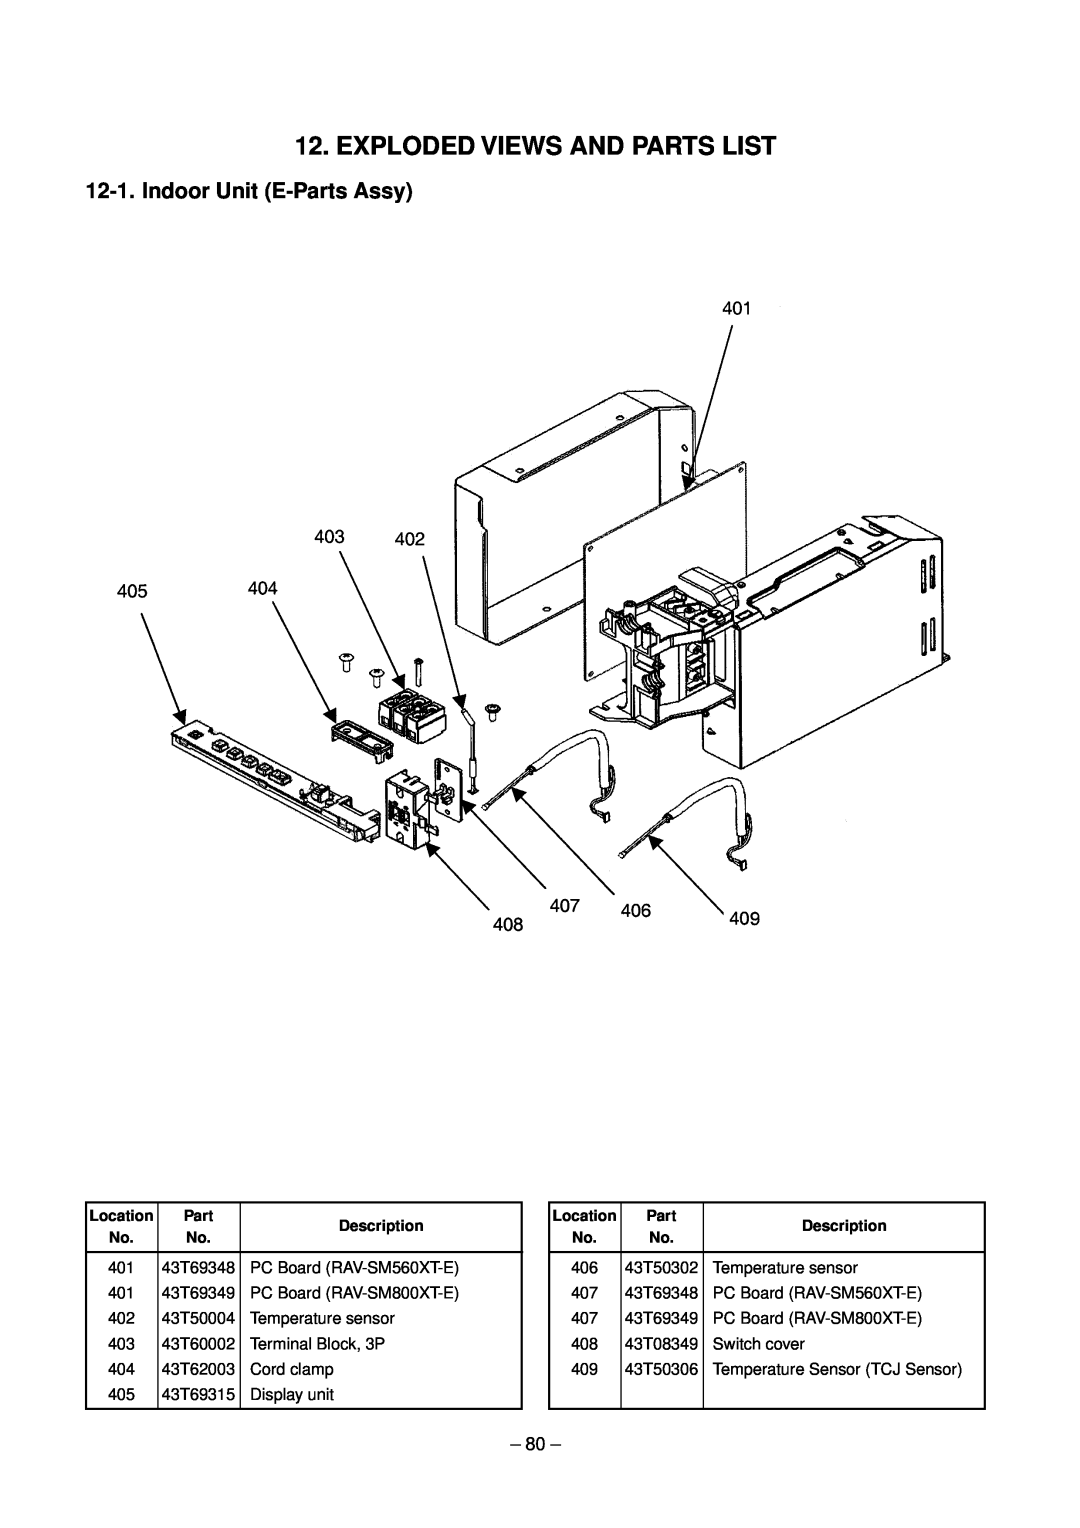 Toshiba RAV-SM800XT-E, RAV-SM560XT-E service manual Exploded Views And Parts List, Indoor Unit E-PartsAssy 